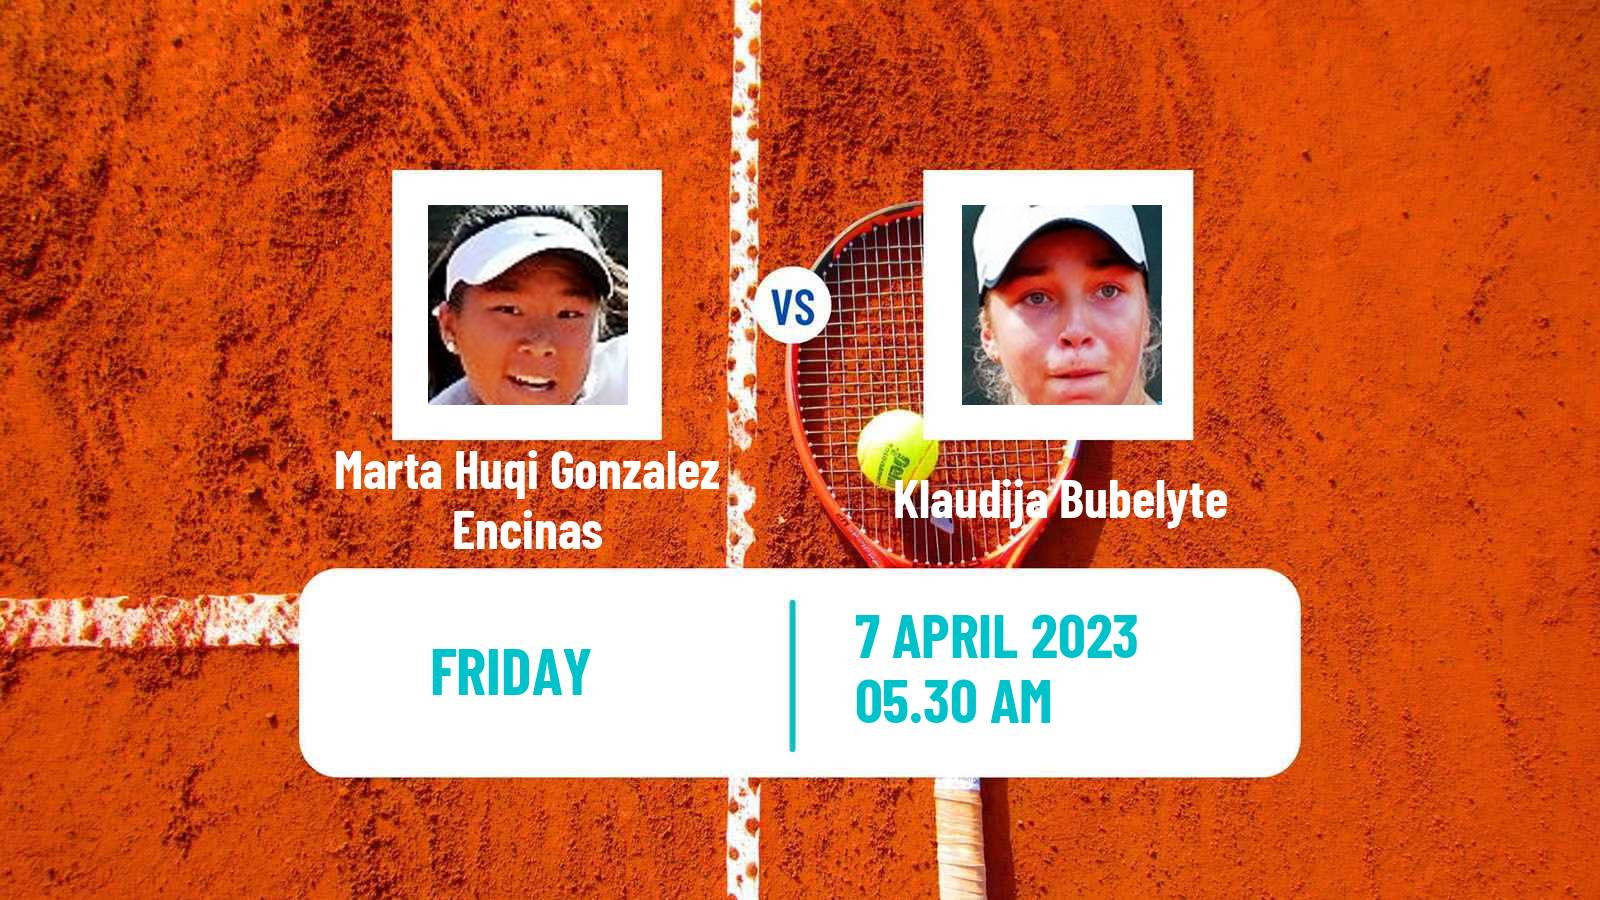 Tennis ITF Tournaments Marta Huqi Gonzalez Encinas - Klaudija Bubelyte